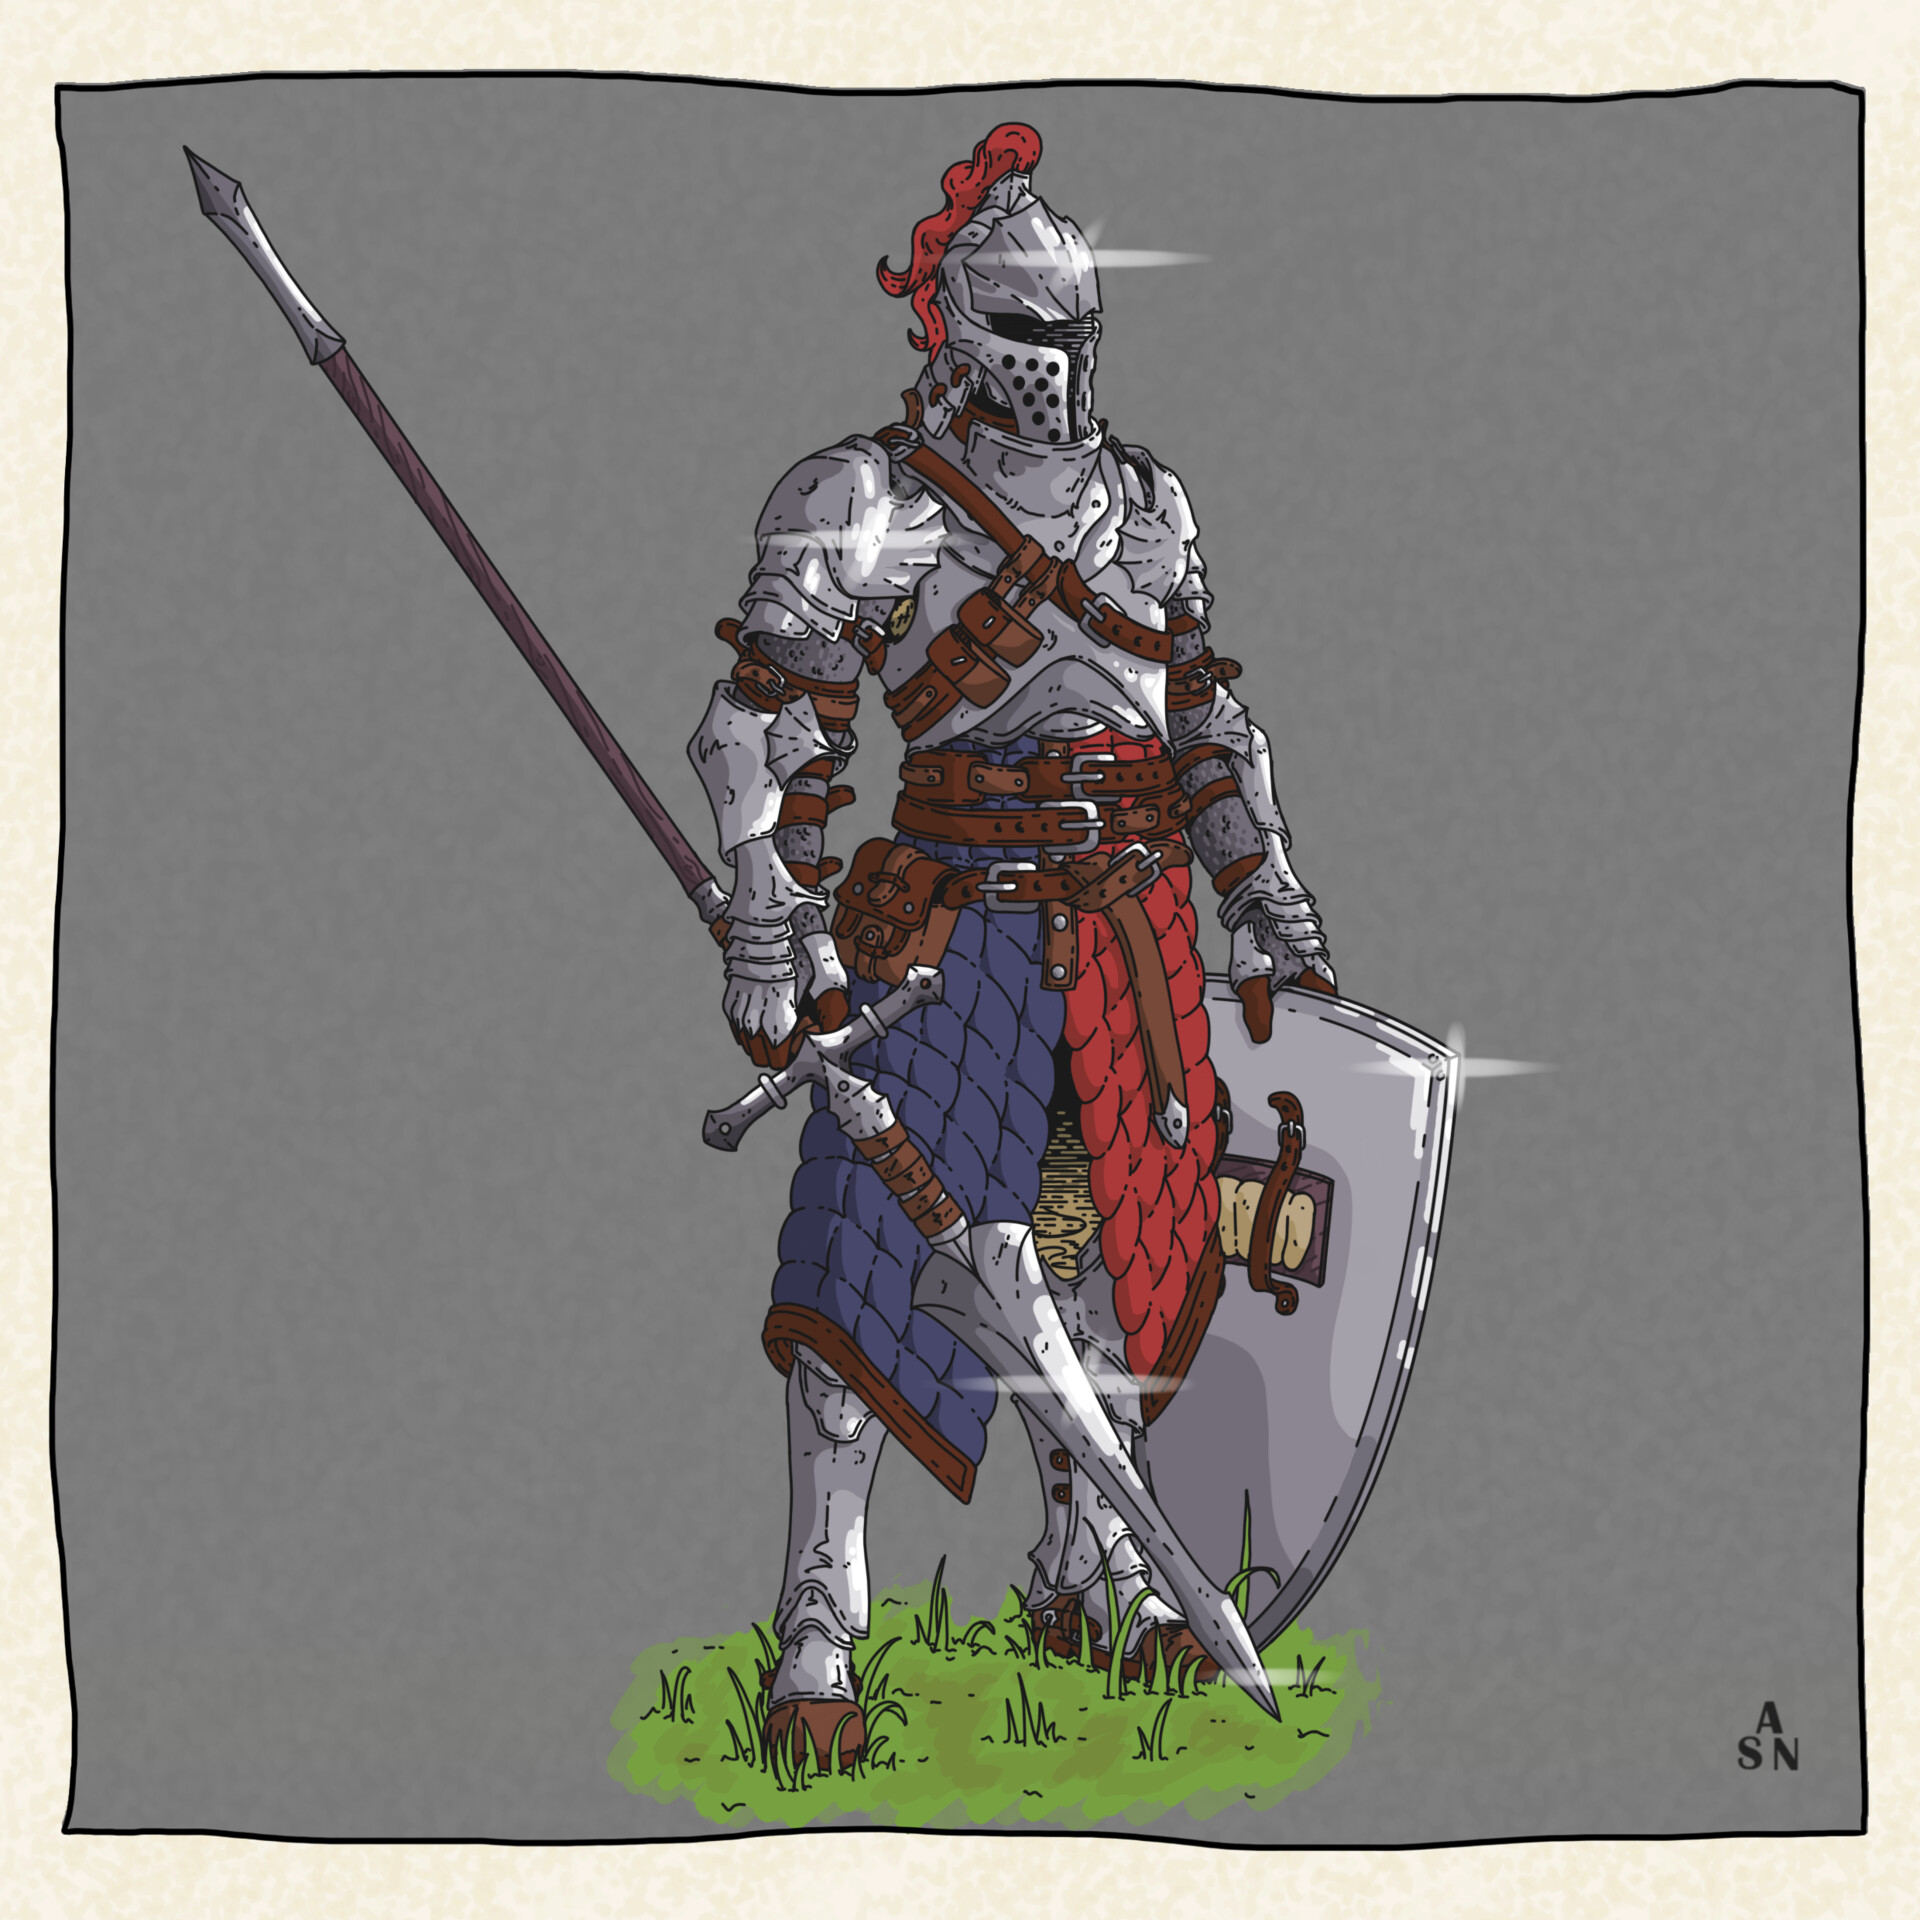 ArtStation - Knight in shining armor